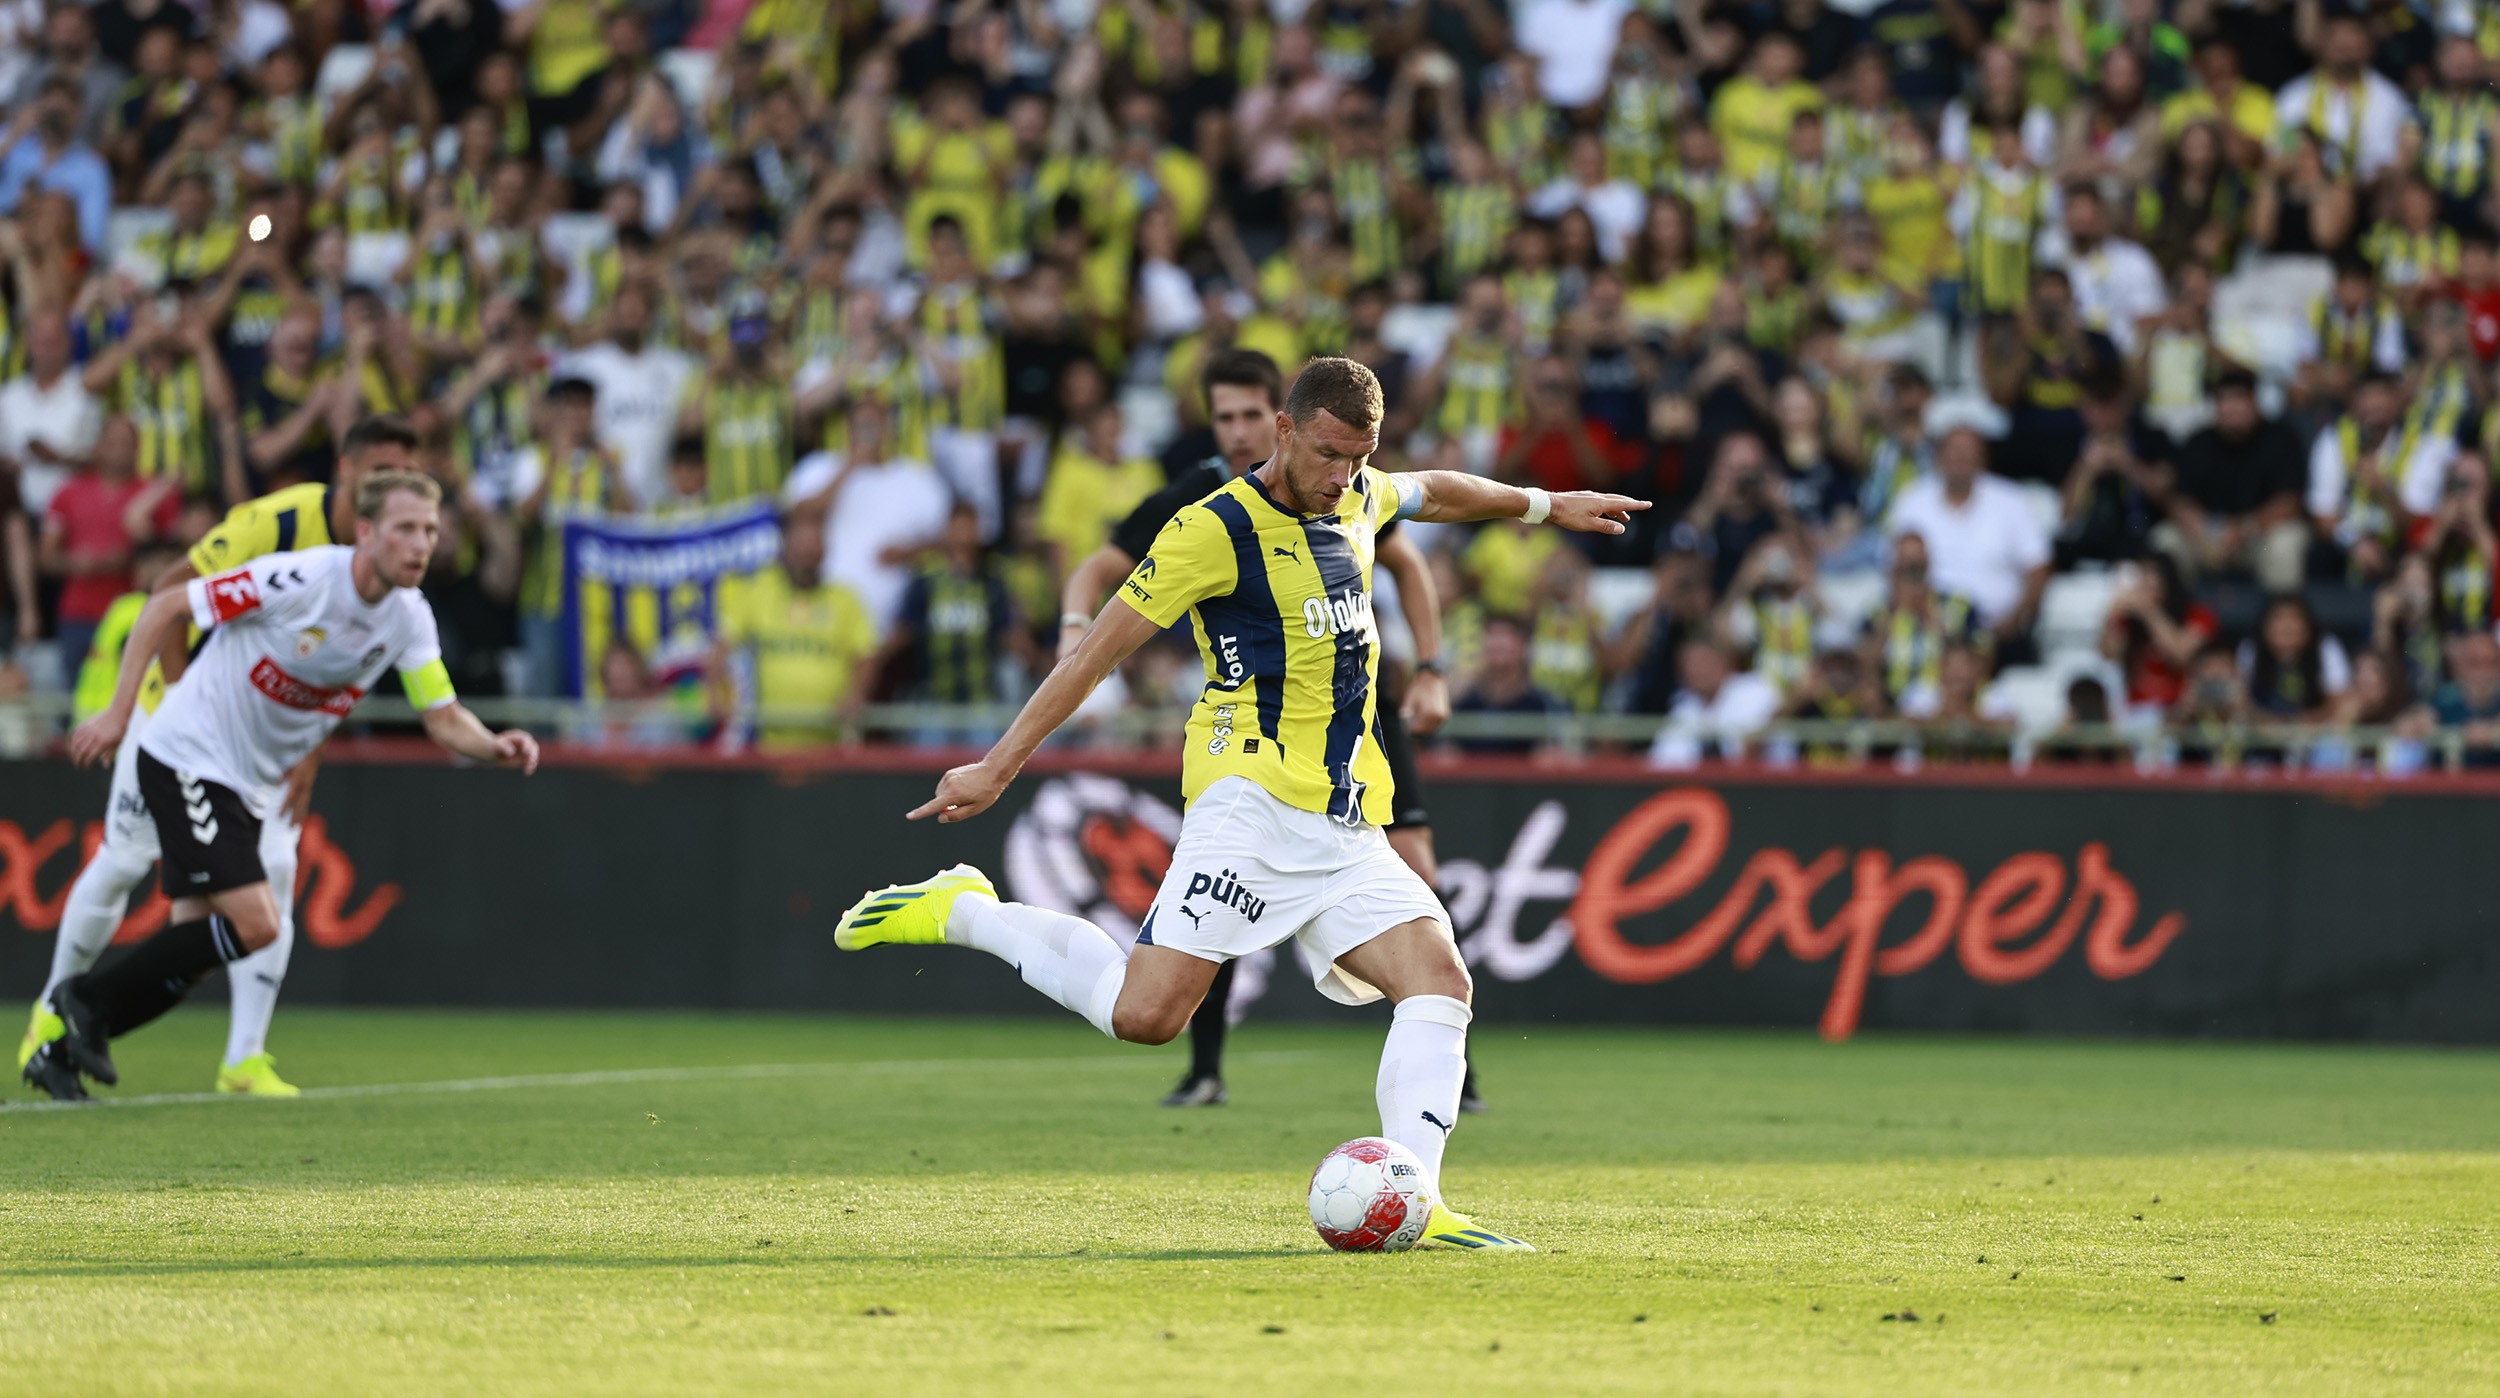 Fenerbahçe, hazırlık maçında Admira Wacker ile 1-1 berabere kaldı